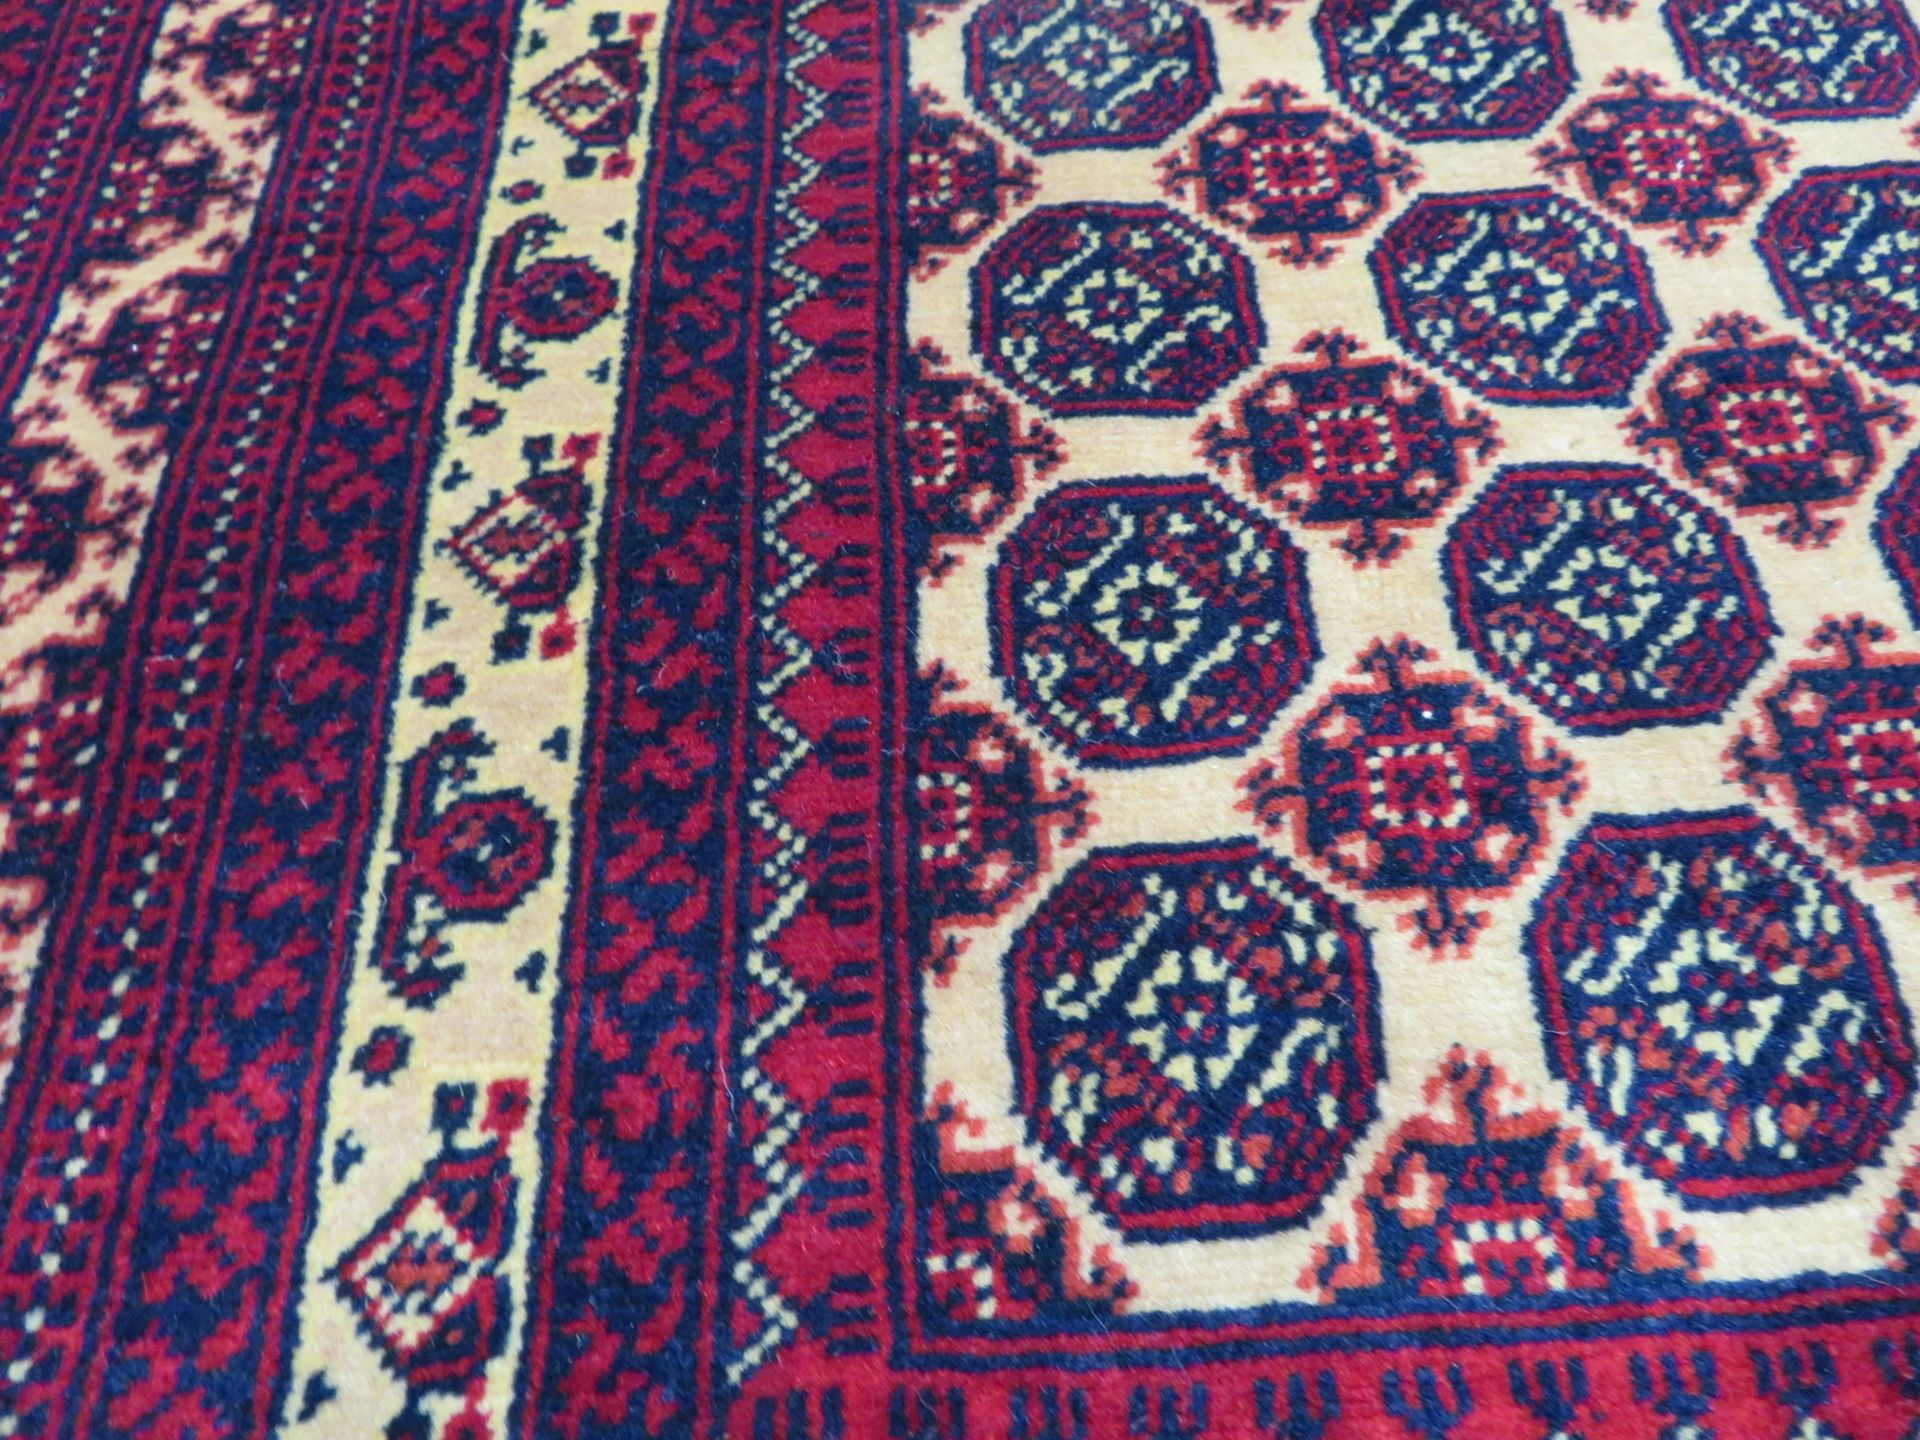 Khal Mohammadi 'Khawaja Roshnai' Afghan rug measures 3.5m L x 2.5m W - Image 8 of 13